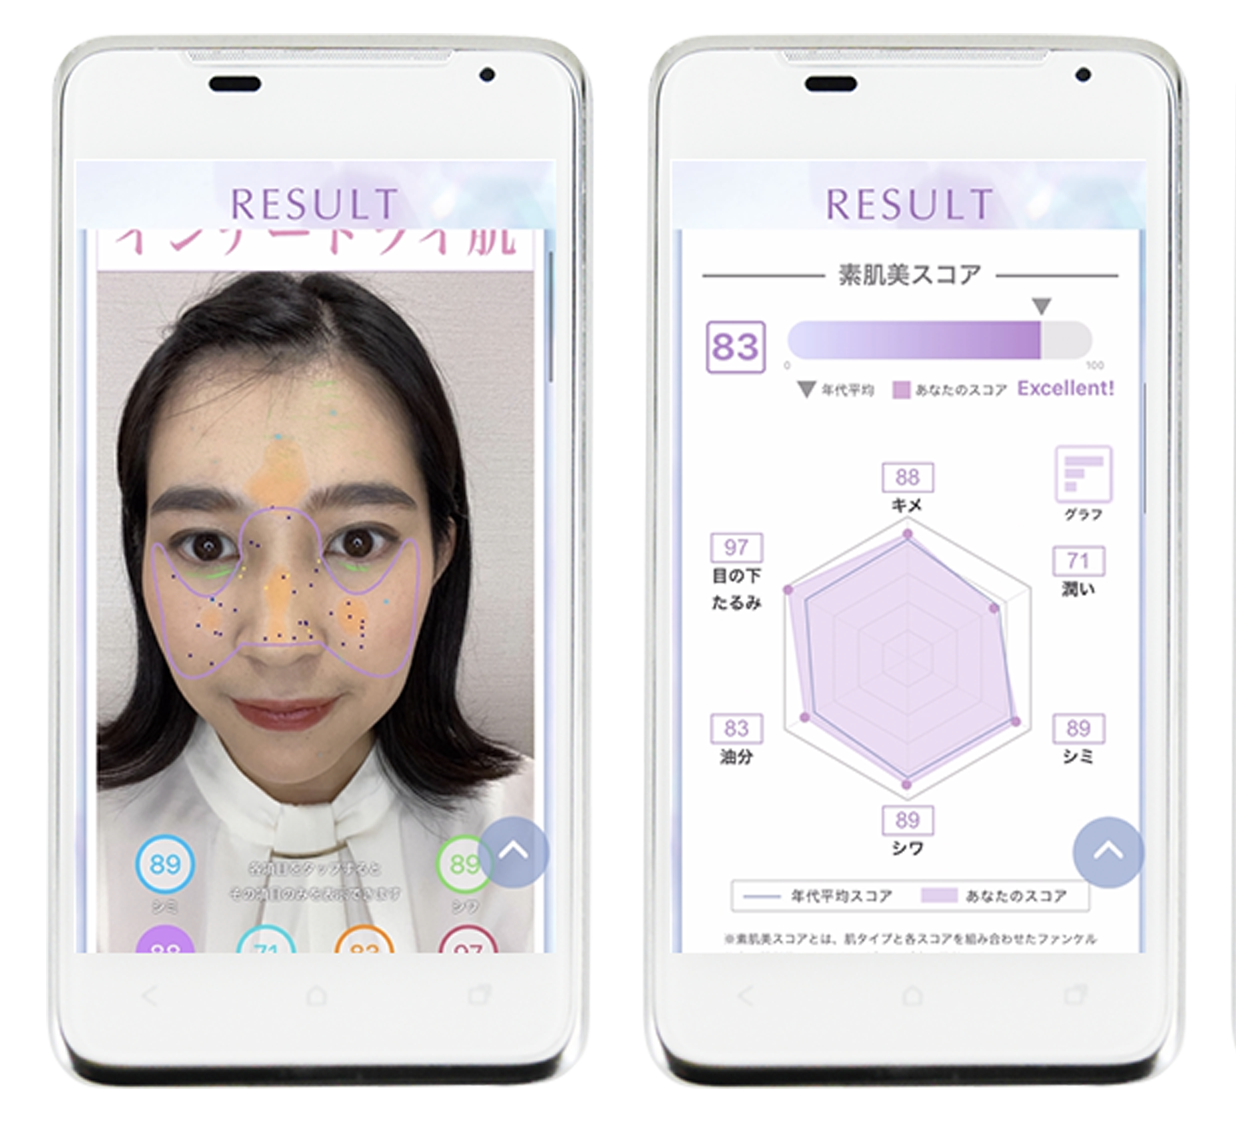 日本美容和健康食品品牌 FANCL升级智能测肤服务，推出男性专属测试